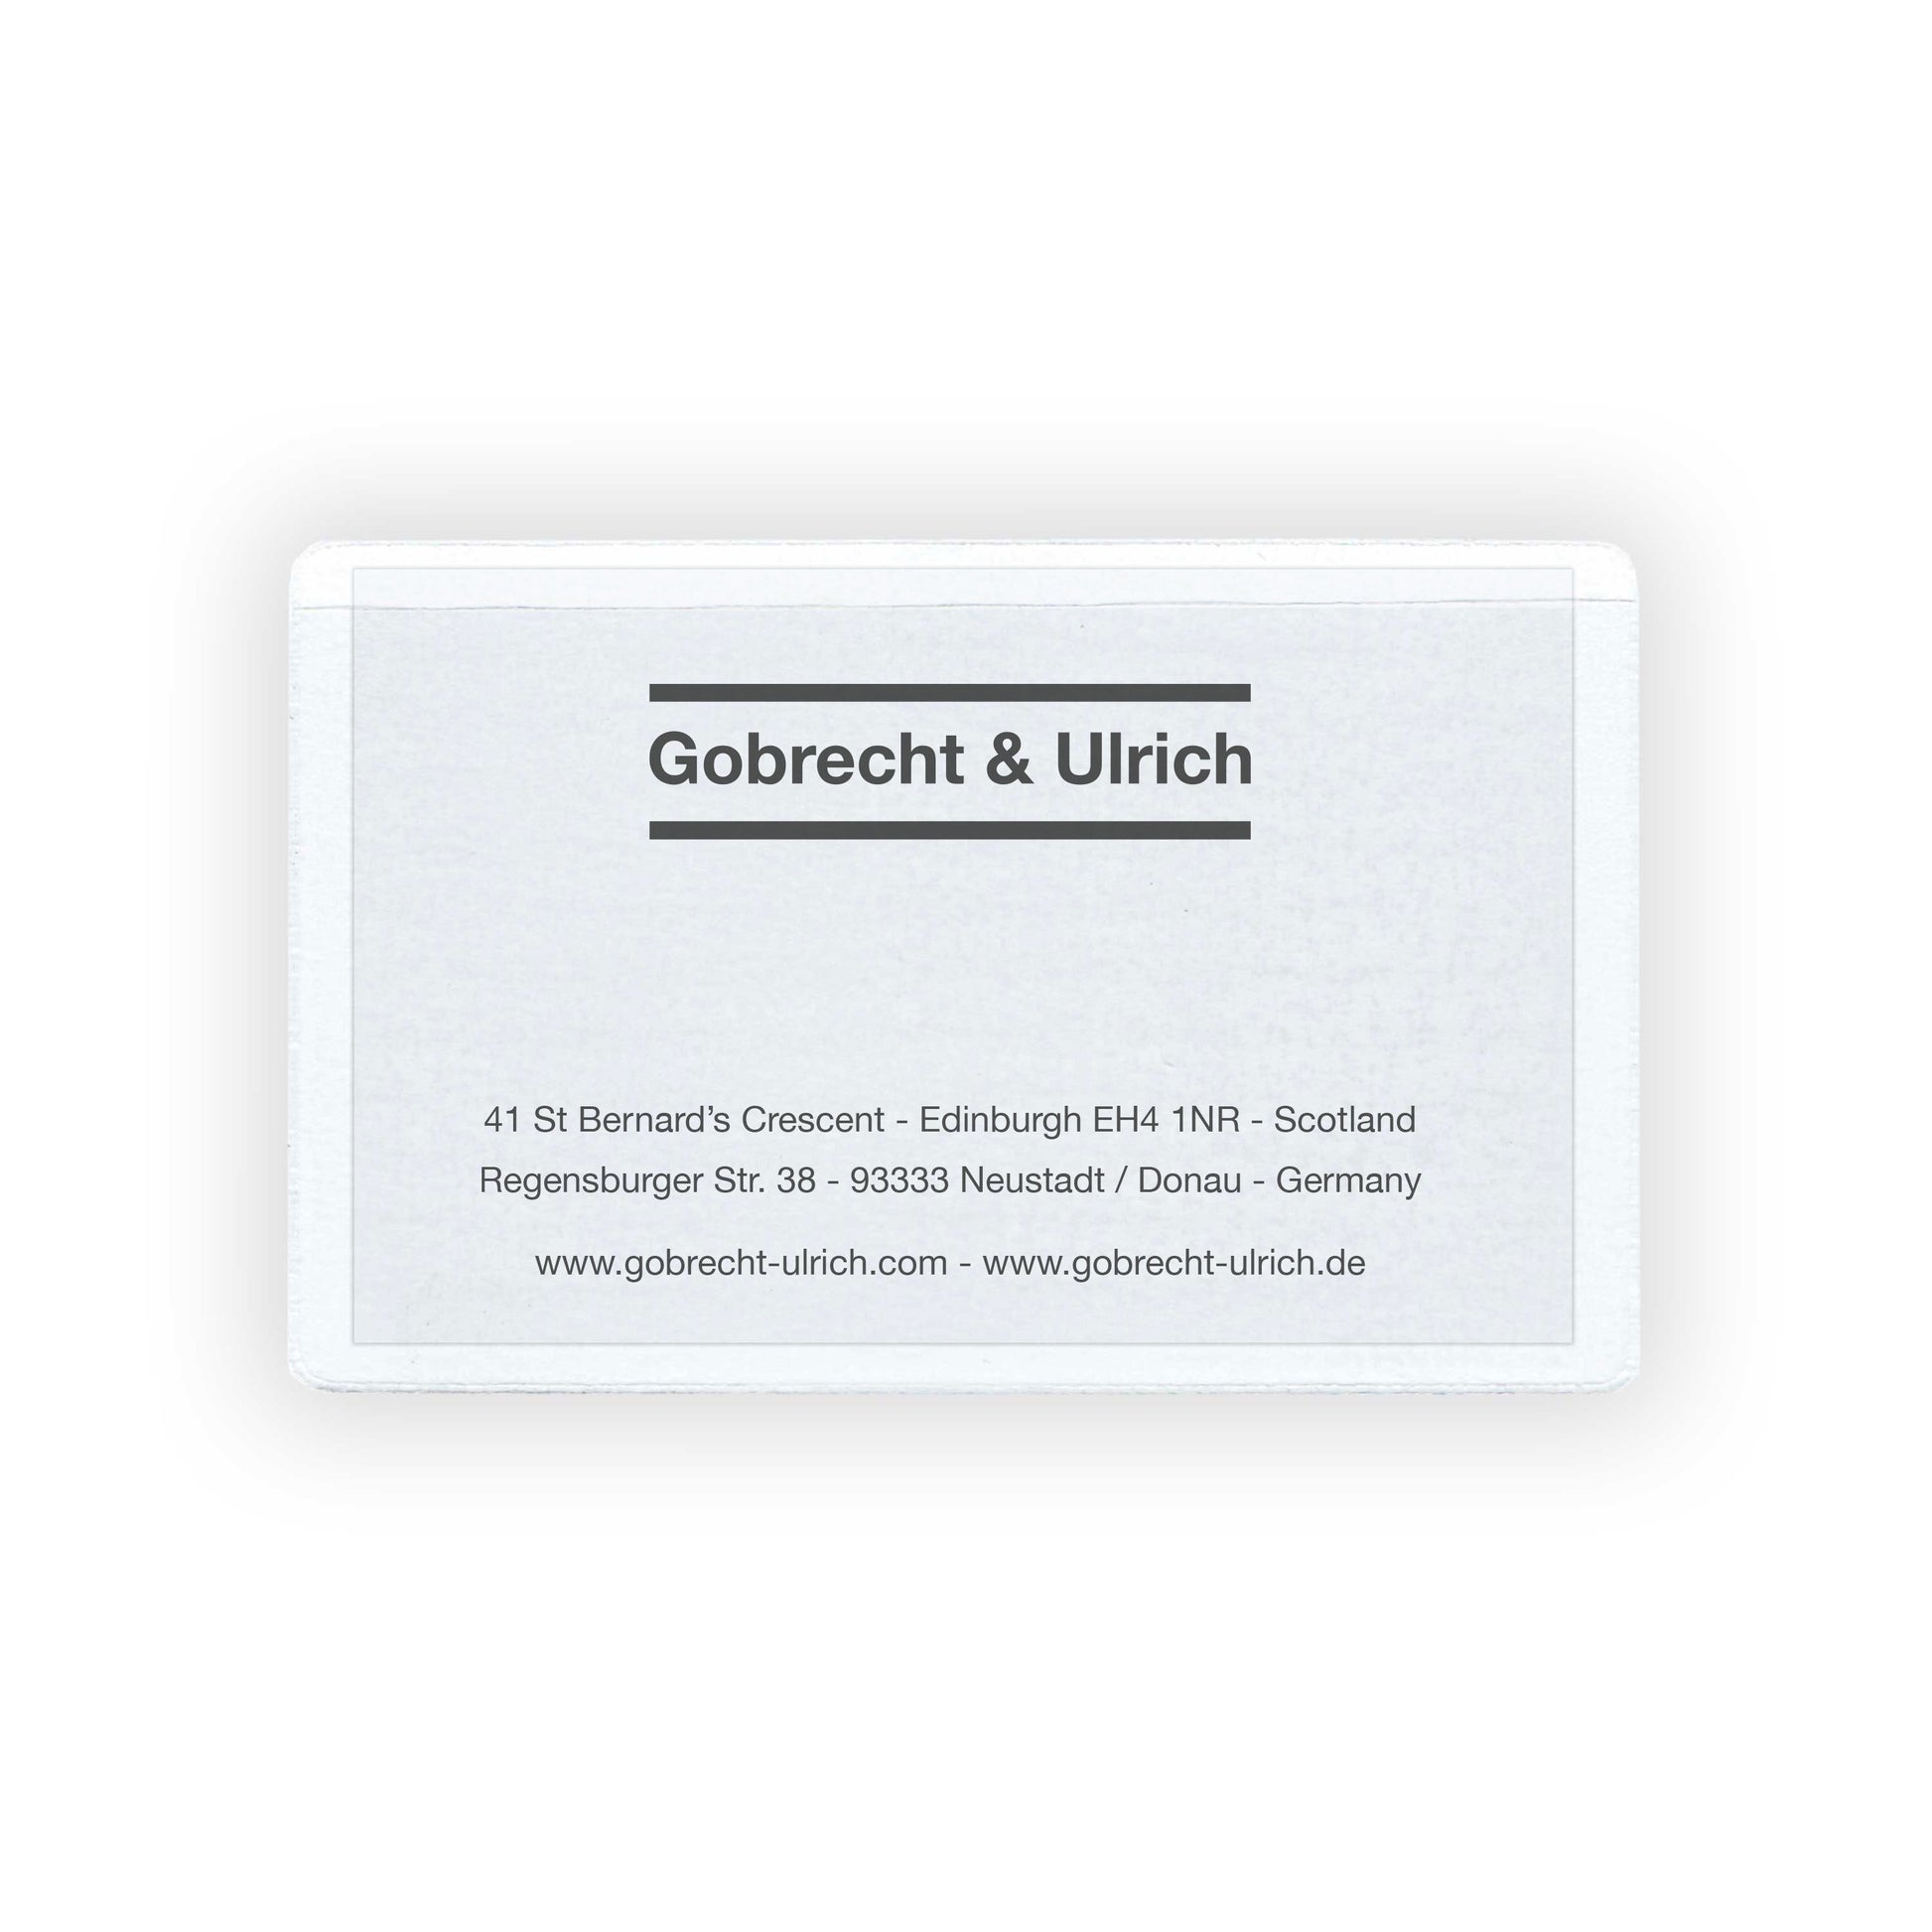 Selbstklebende Visitenkartentasche mit Visitenkarte von Gobrecht & Ulrich